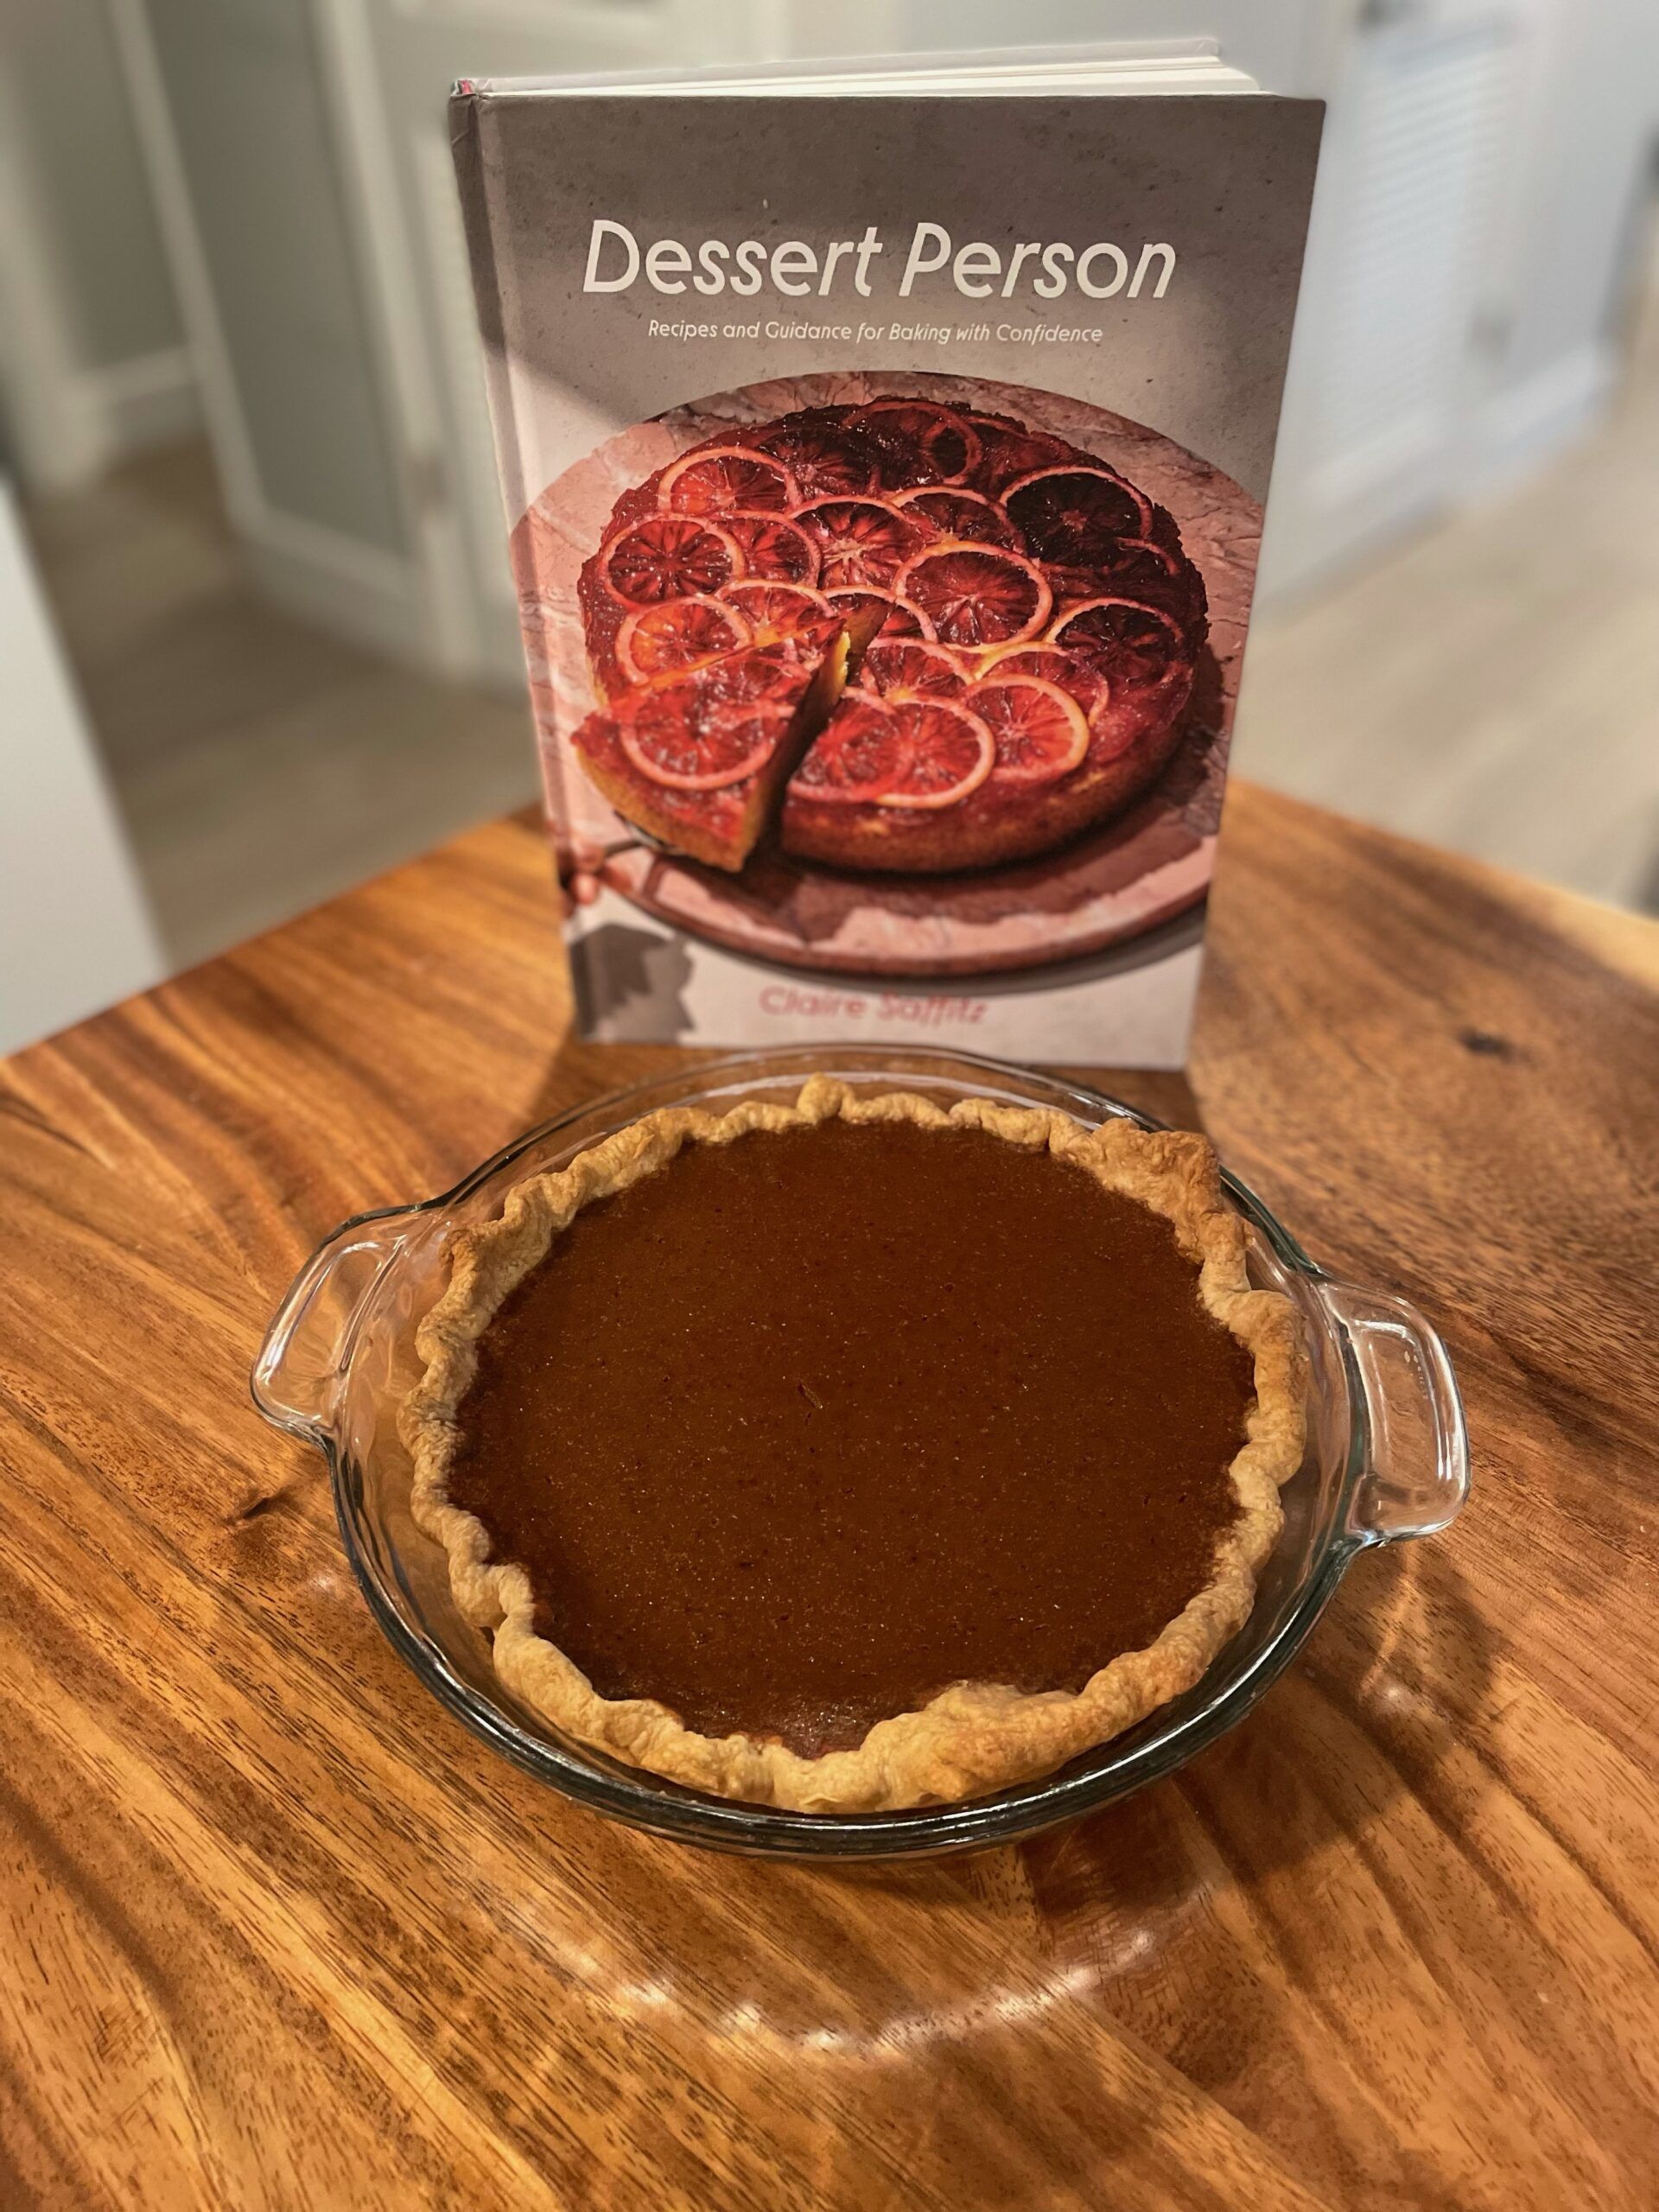 Dark brown pumpkin pie with Claire Saffitz's Dessert Person cookbook